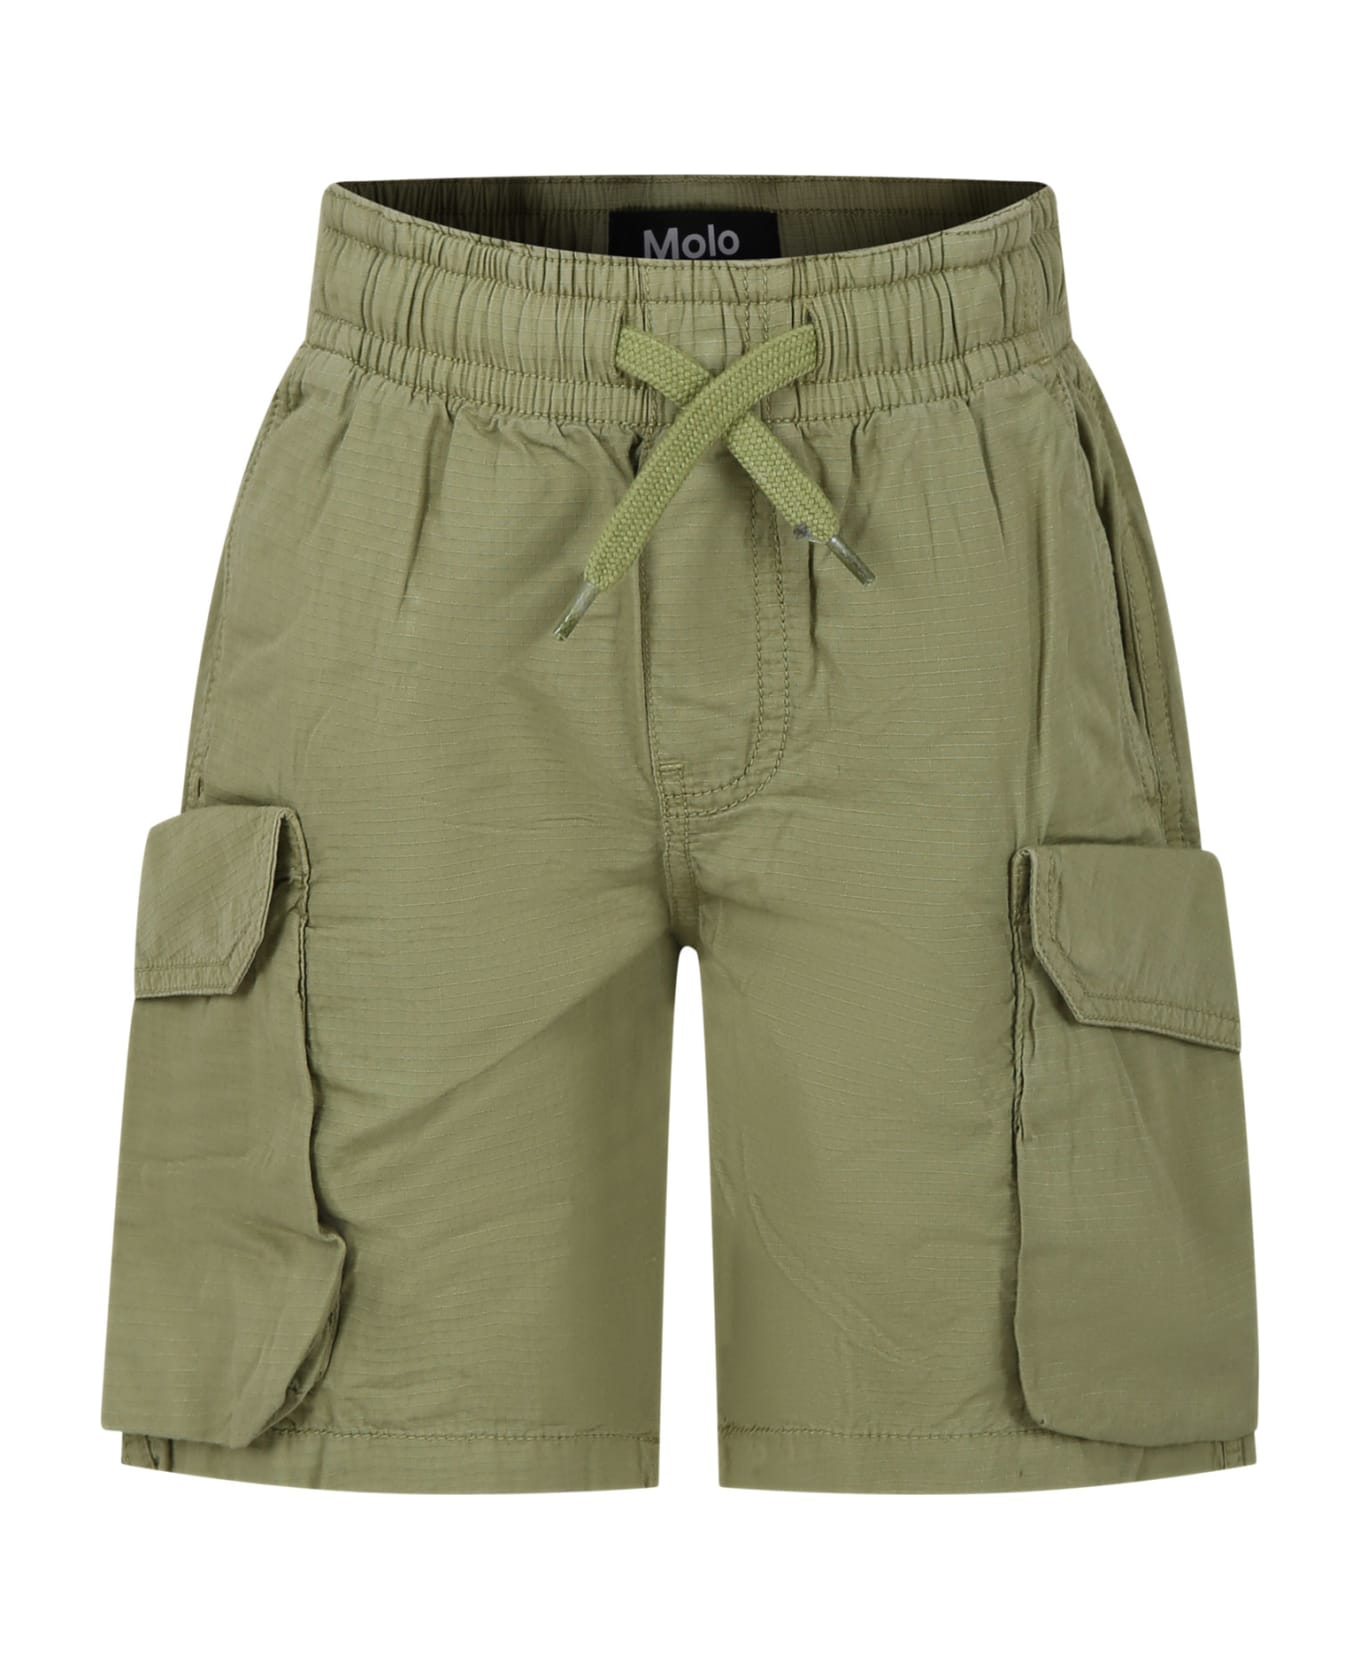 Molo Casual Argod Green Shorts For Boy - Green